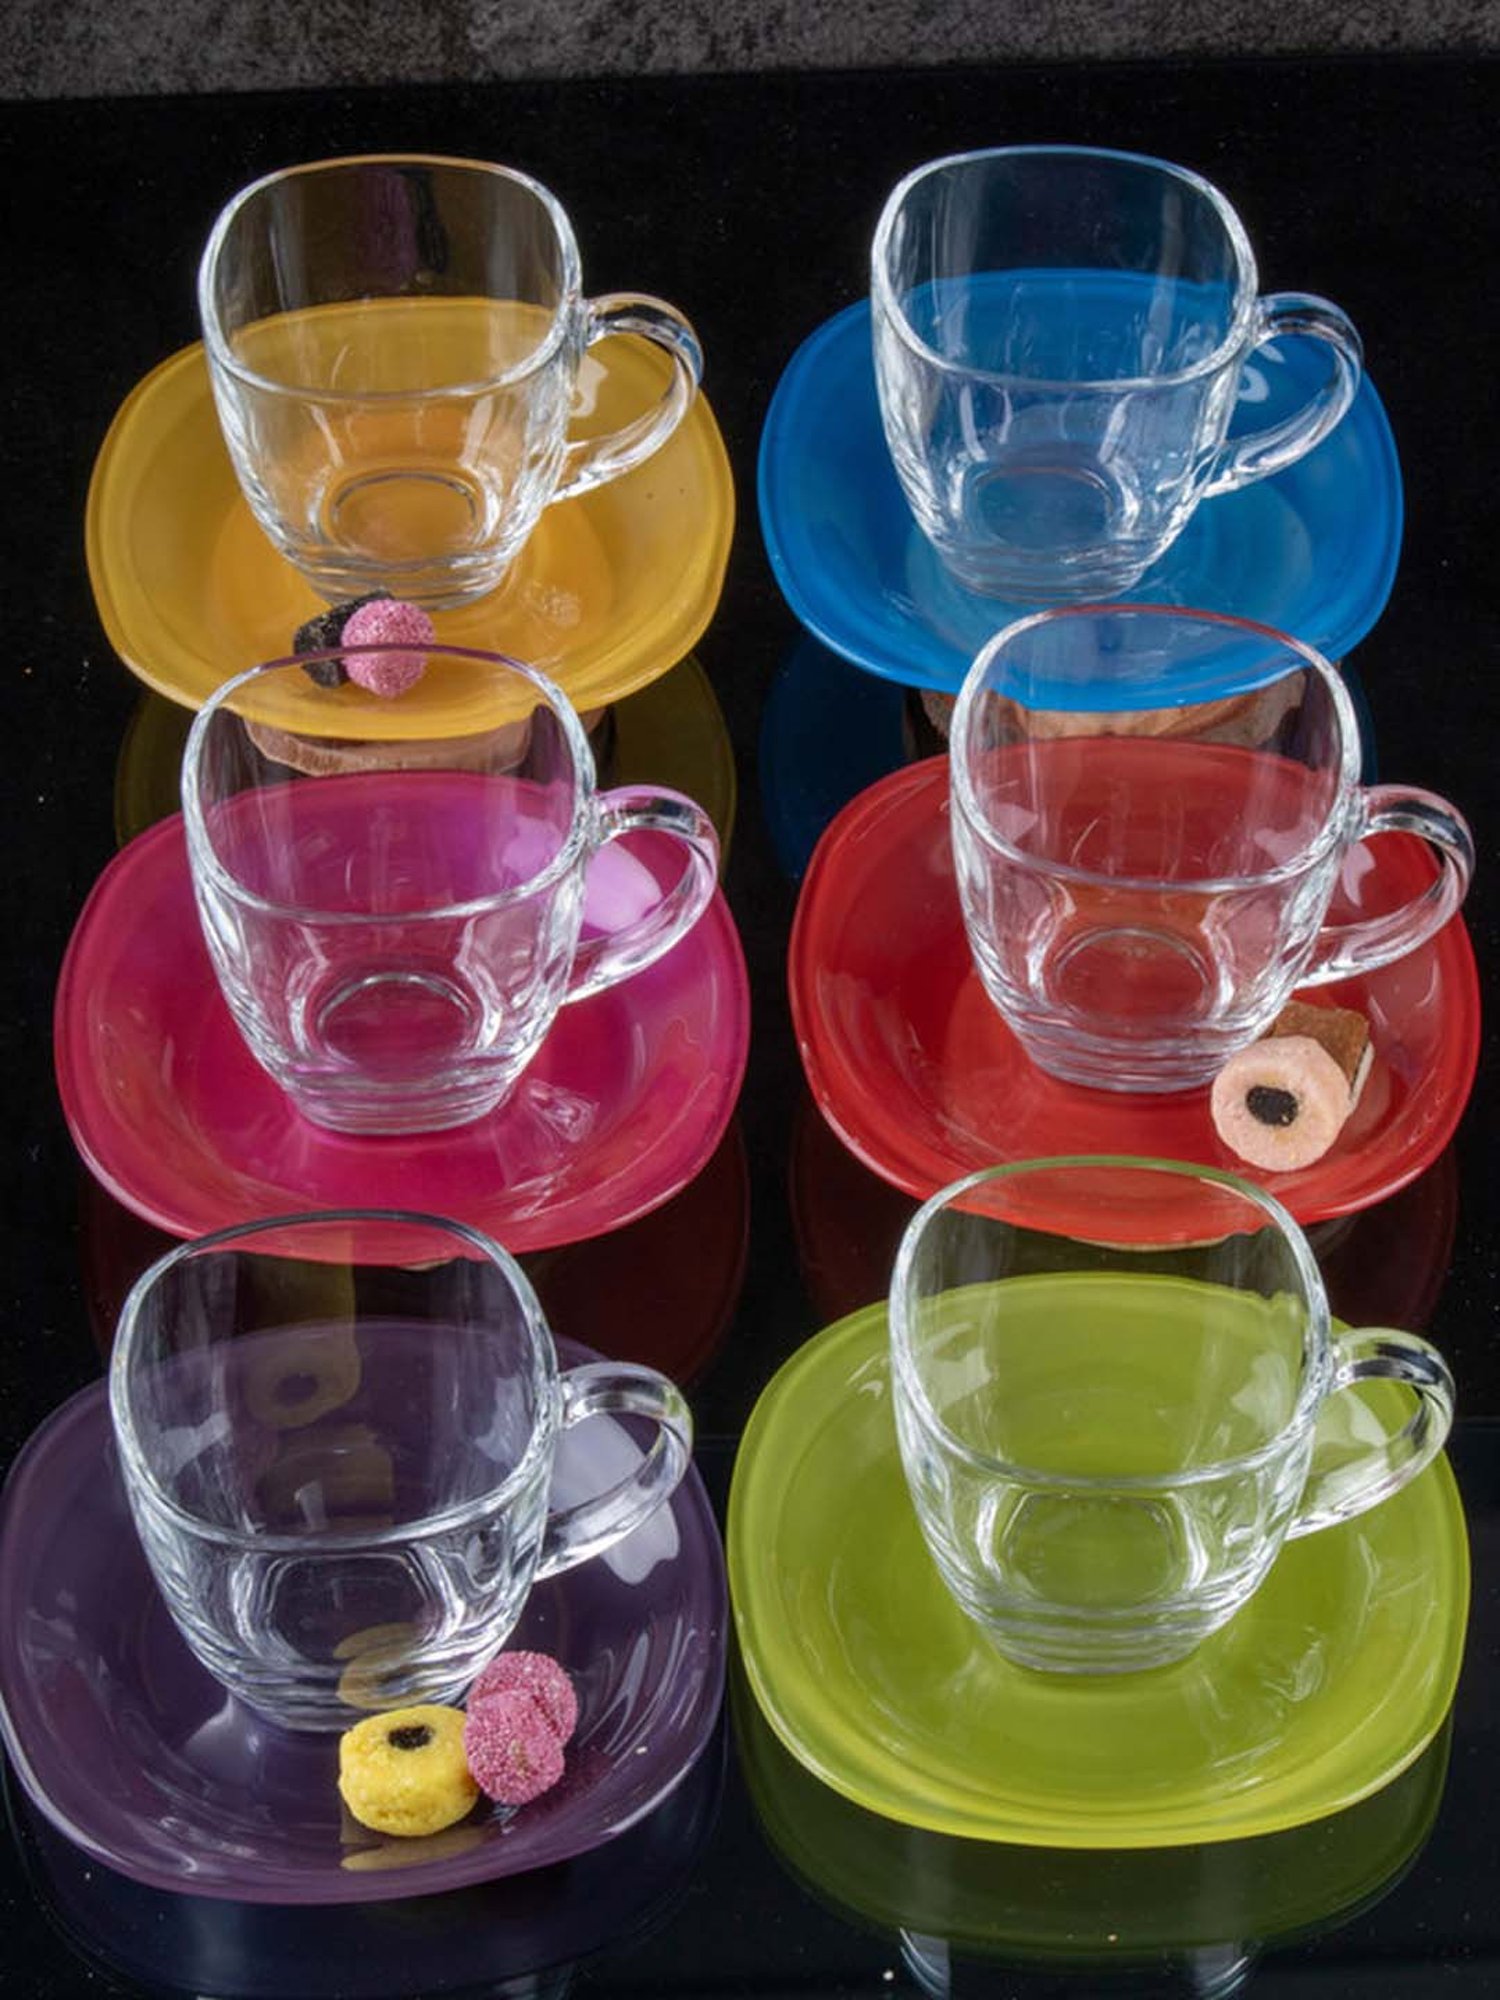 Buy Luminarc Transparent, Yellow Glass Tea Set (6 Cup and 6 Saucer